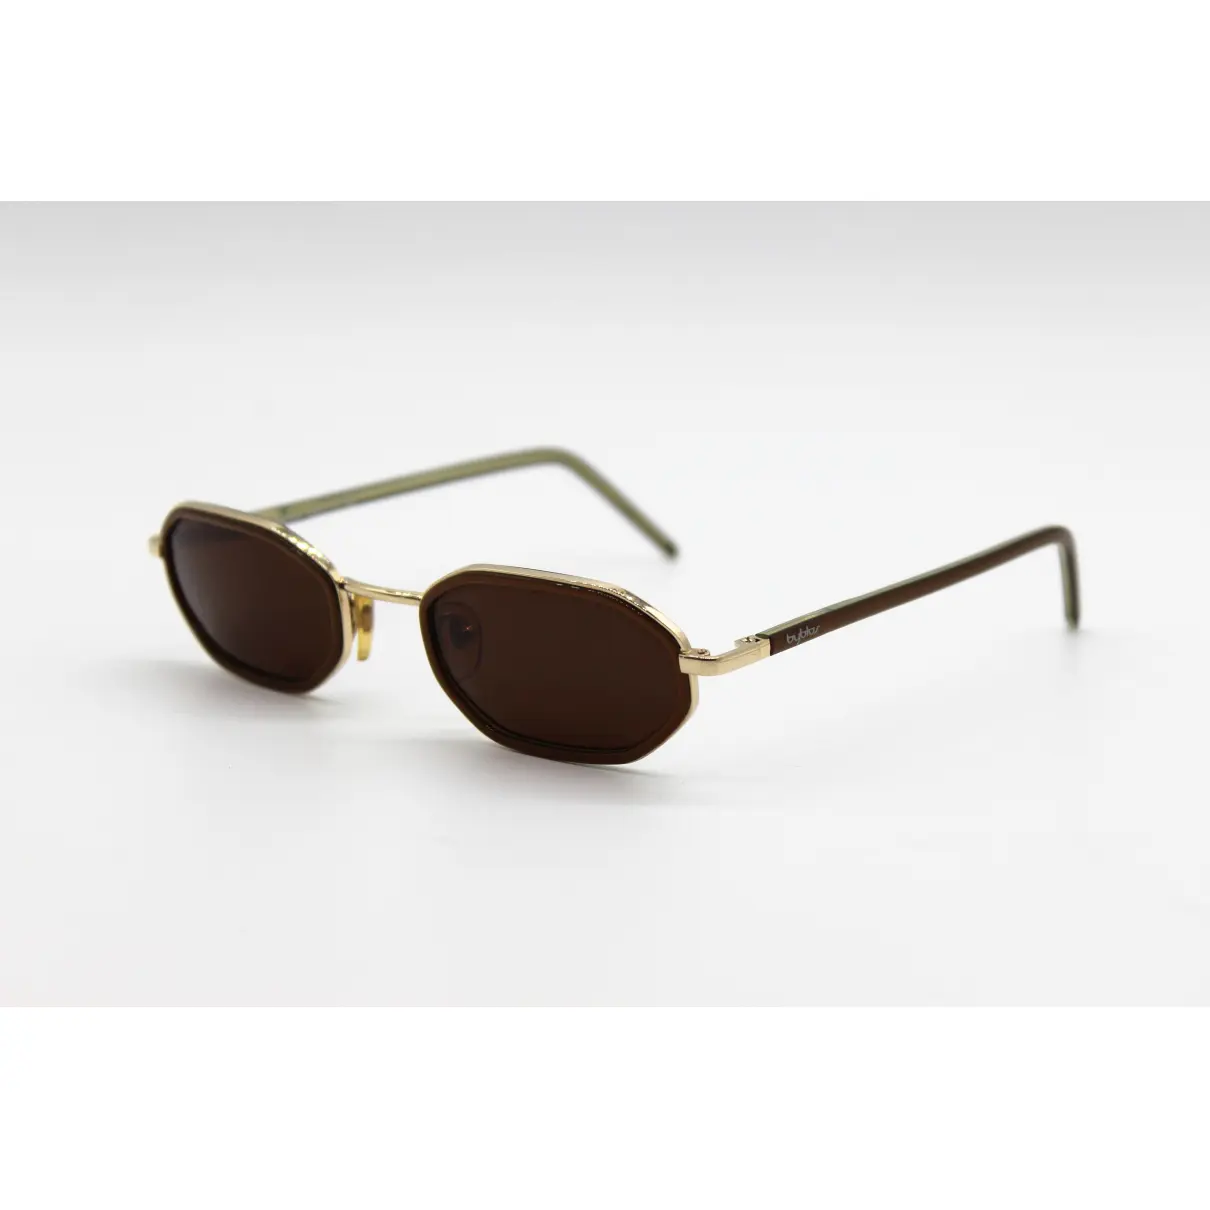 Buy Byblos Sunglasses online - Vintage